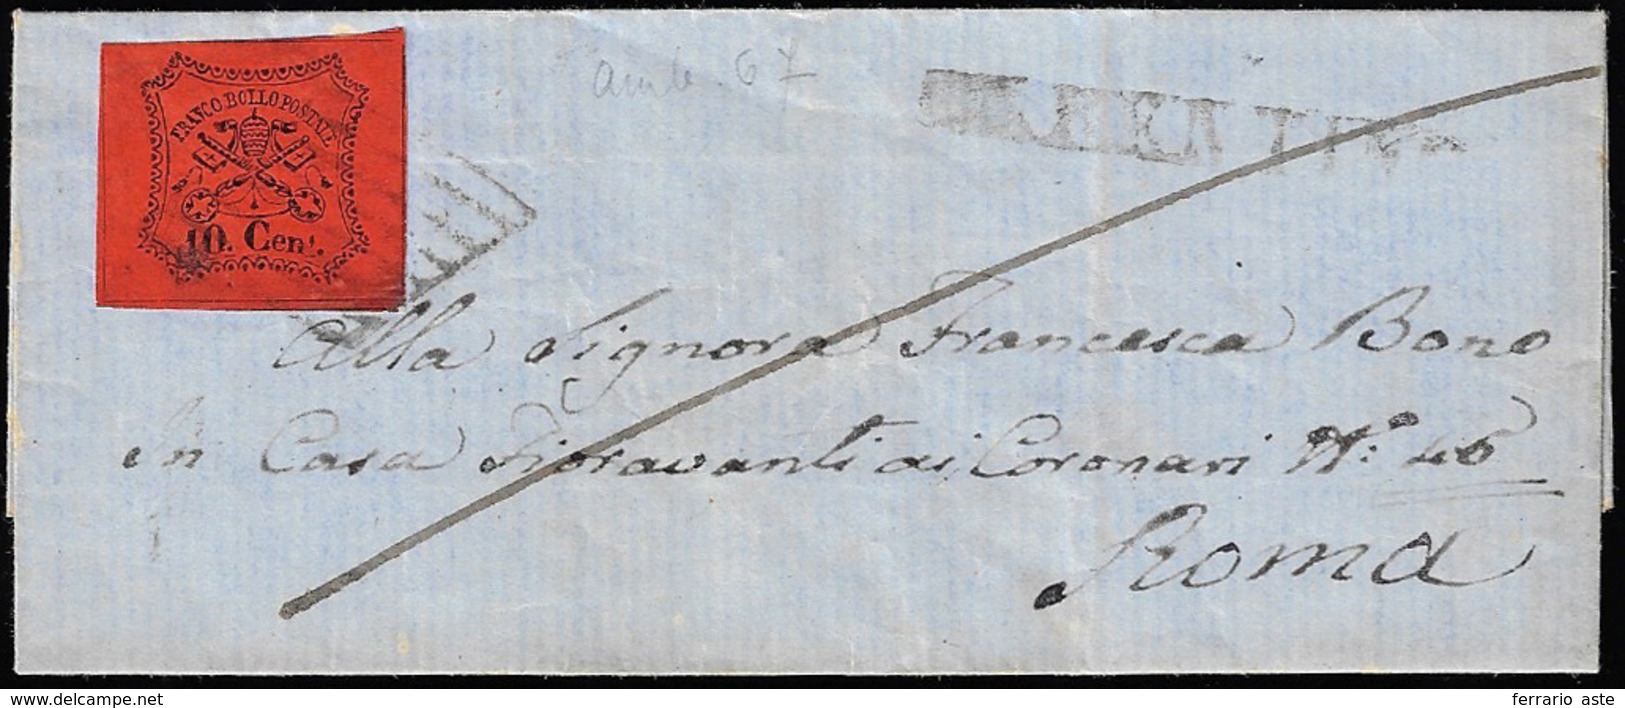 FERENTINO, SD Punti 10 - 10 Cent. (17), Perfetto, Su Lettera Del 21/10/1867 Per Roma. Ex Coll. Andre... - Kirchenstaaten